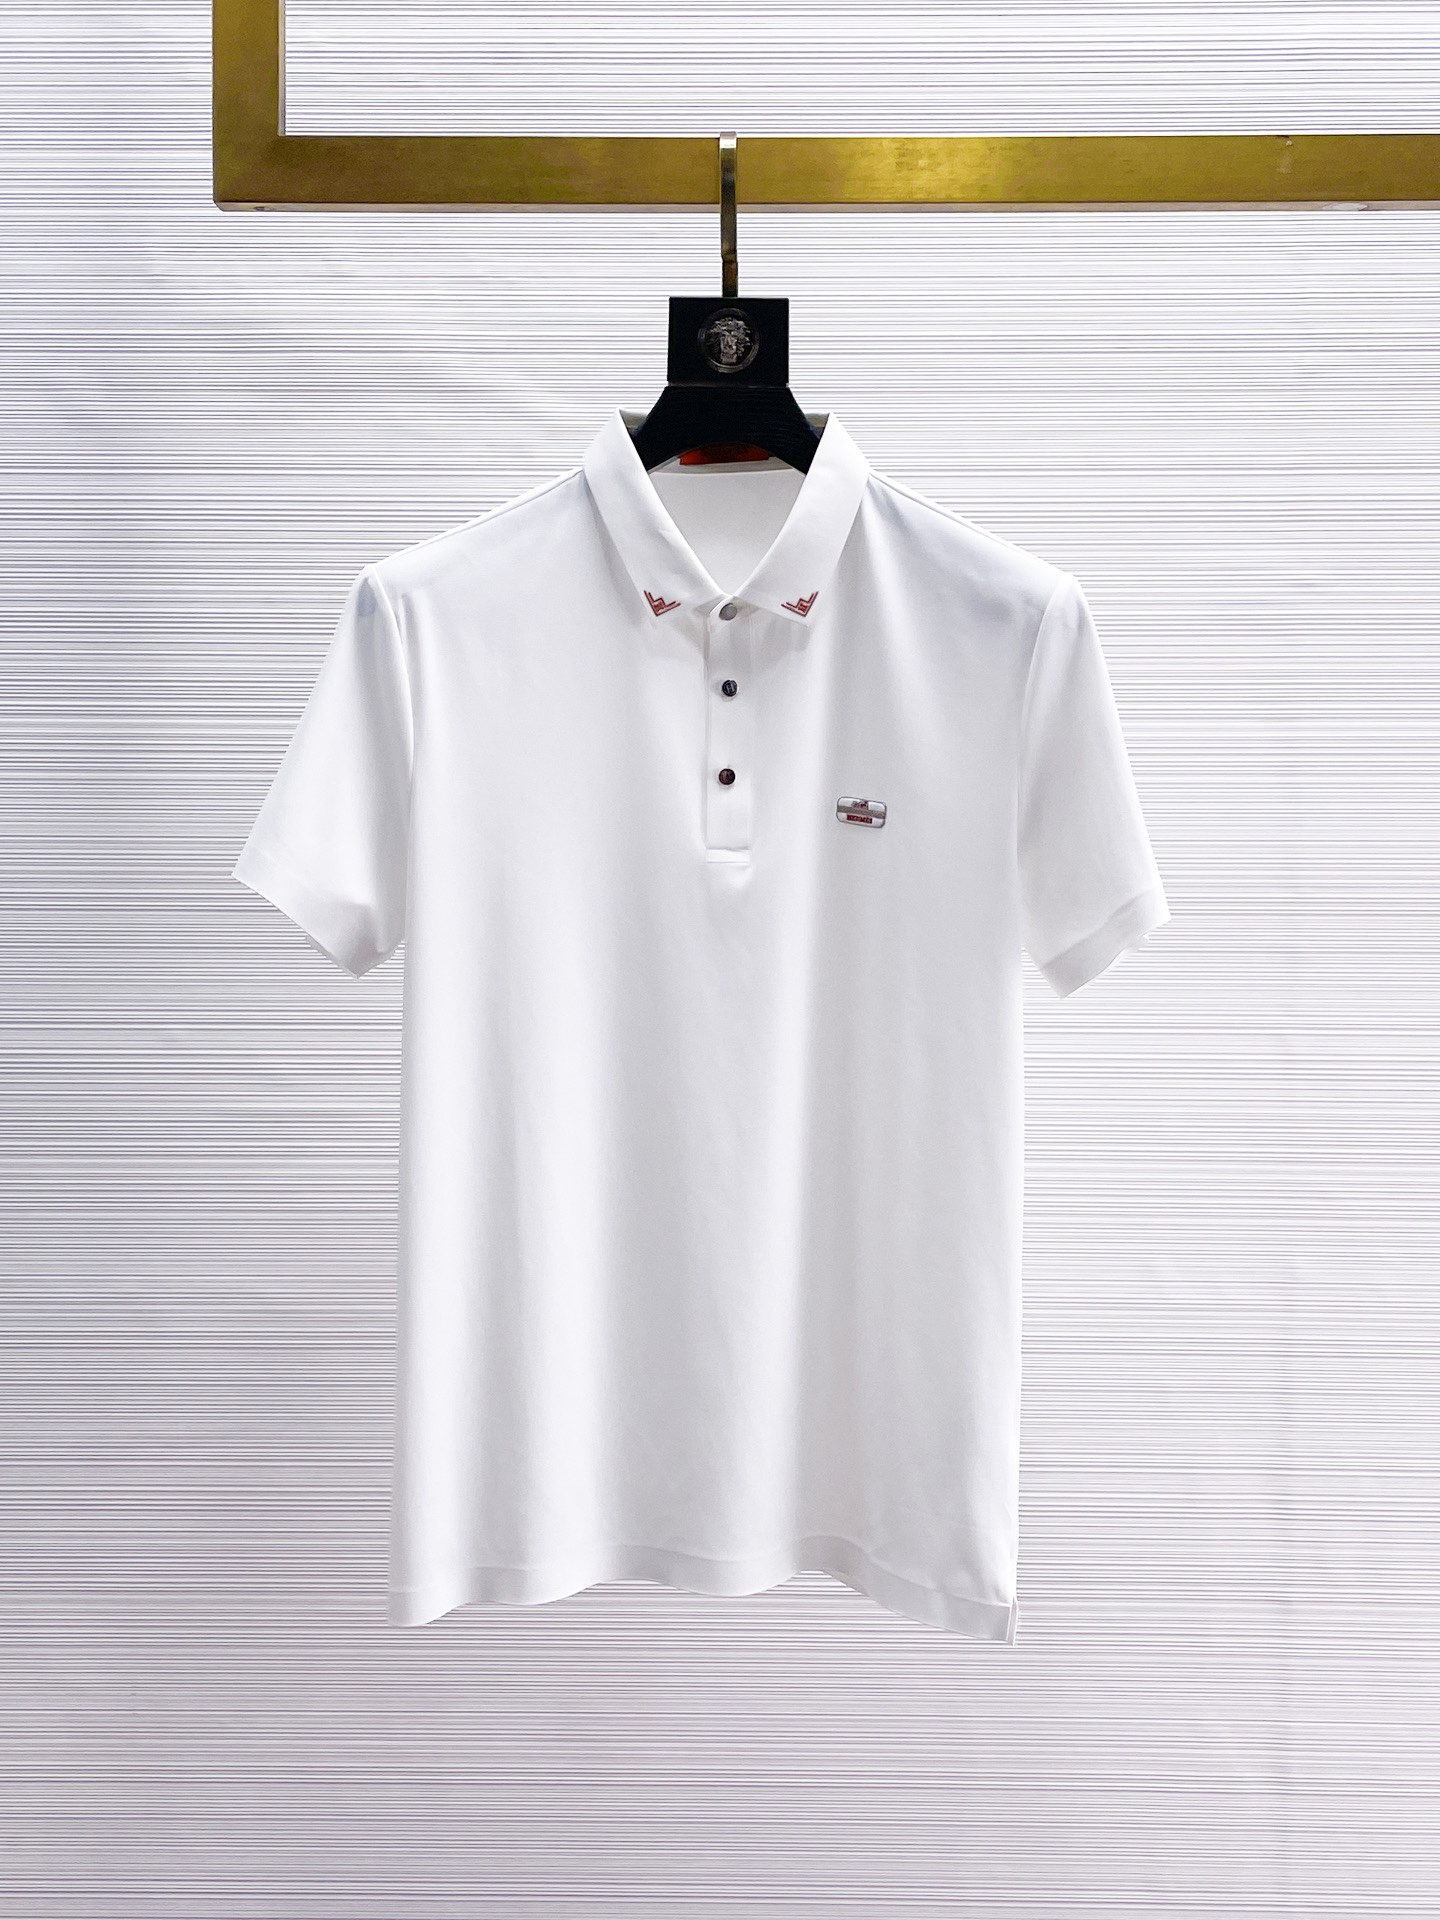 Achetez la meilleure réplique de qualité authentique élevée
 Hermes Vêtements Polo T-Shirt Blanc Série d’été Manches courtes